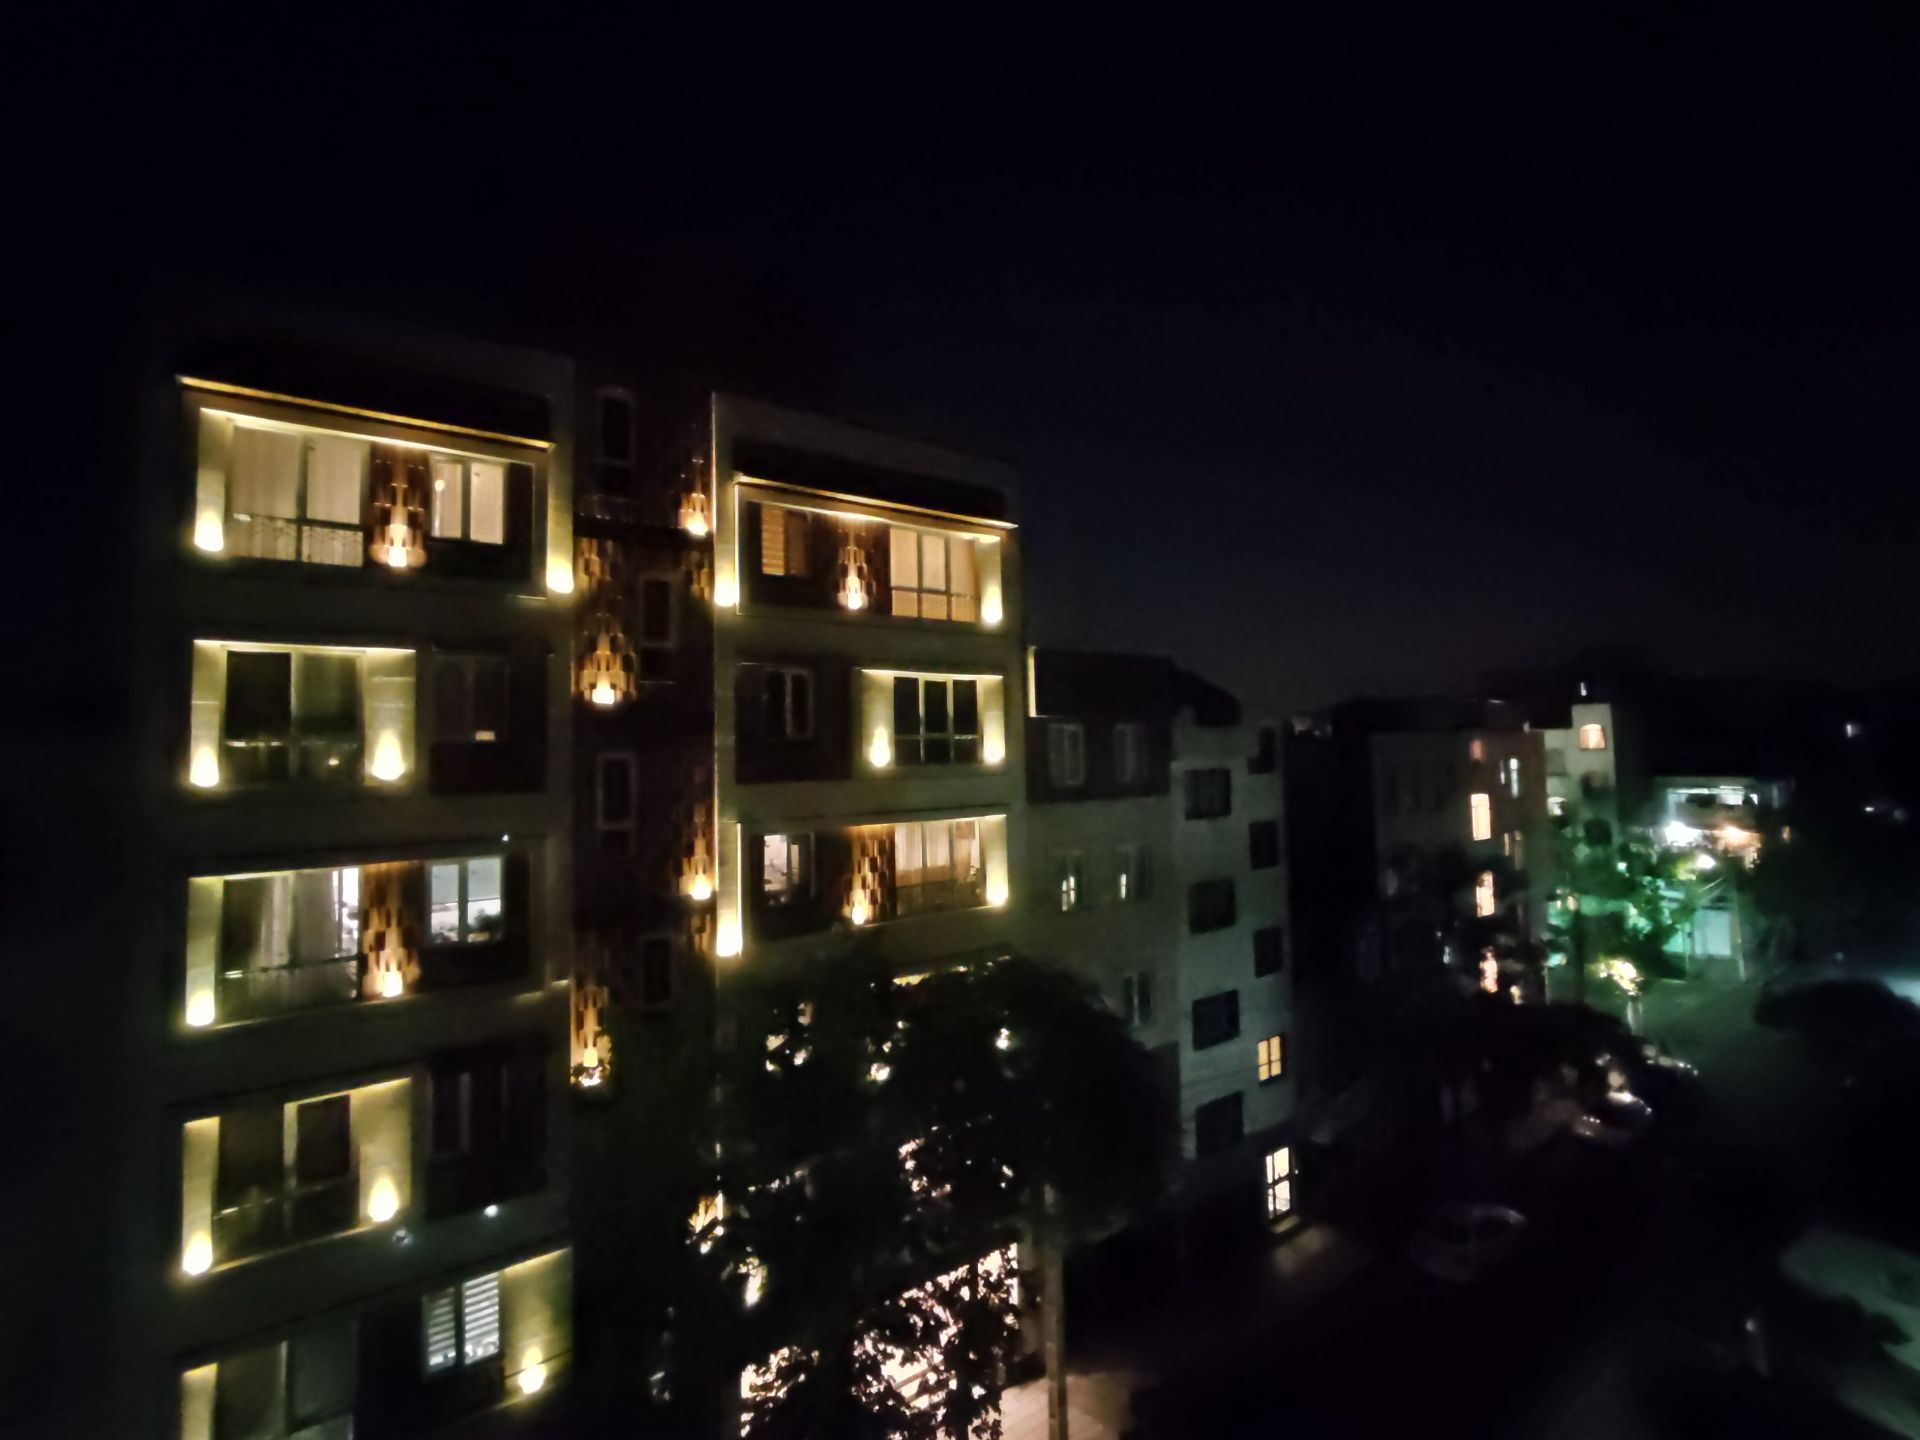 عکس نمونه دوربین اولتراواید پوکو X3 پرو با حالت Photo - نمای ساختمان در تاریکی